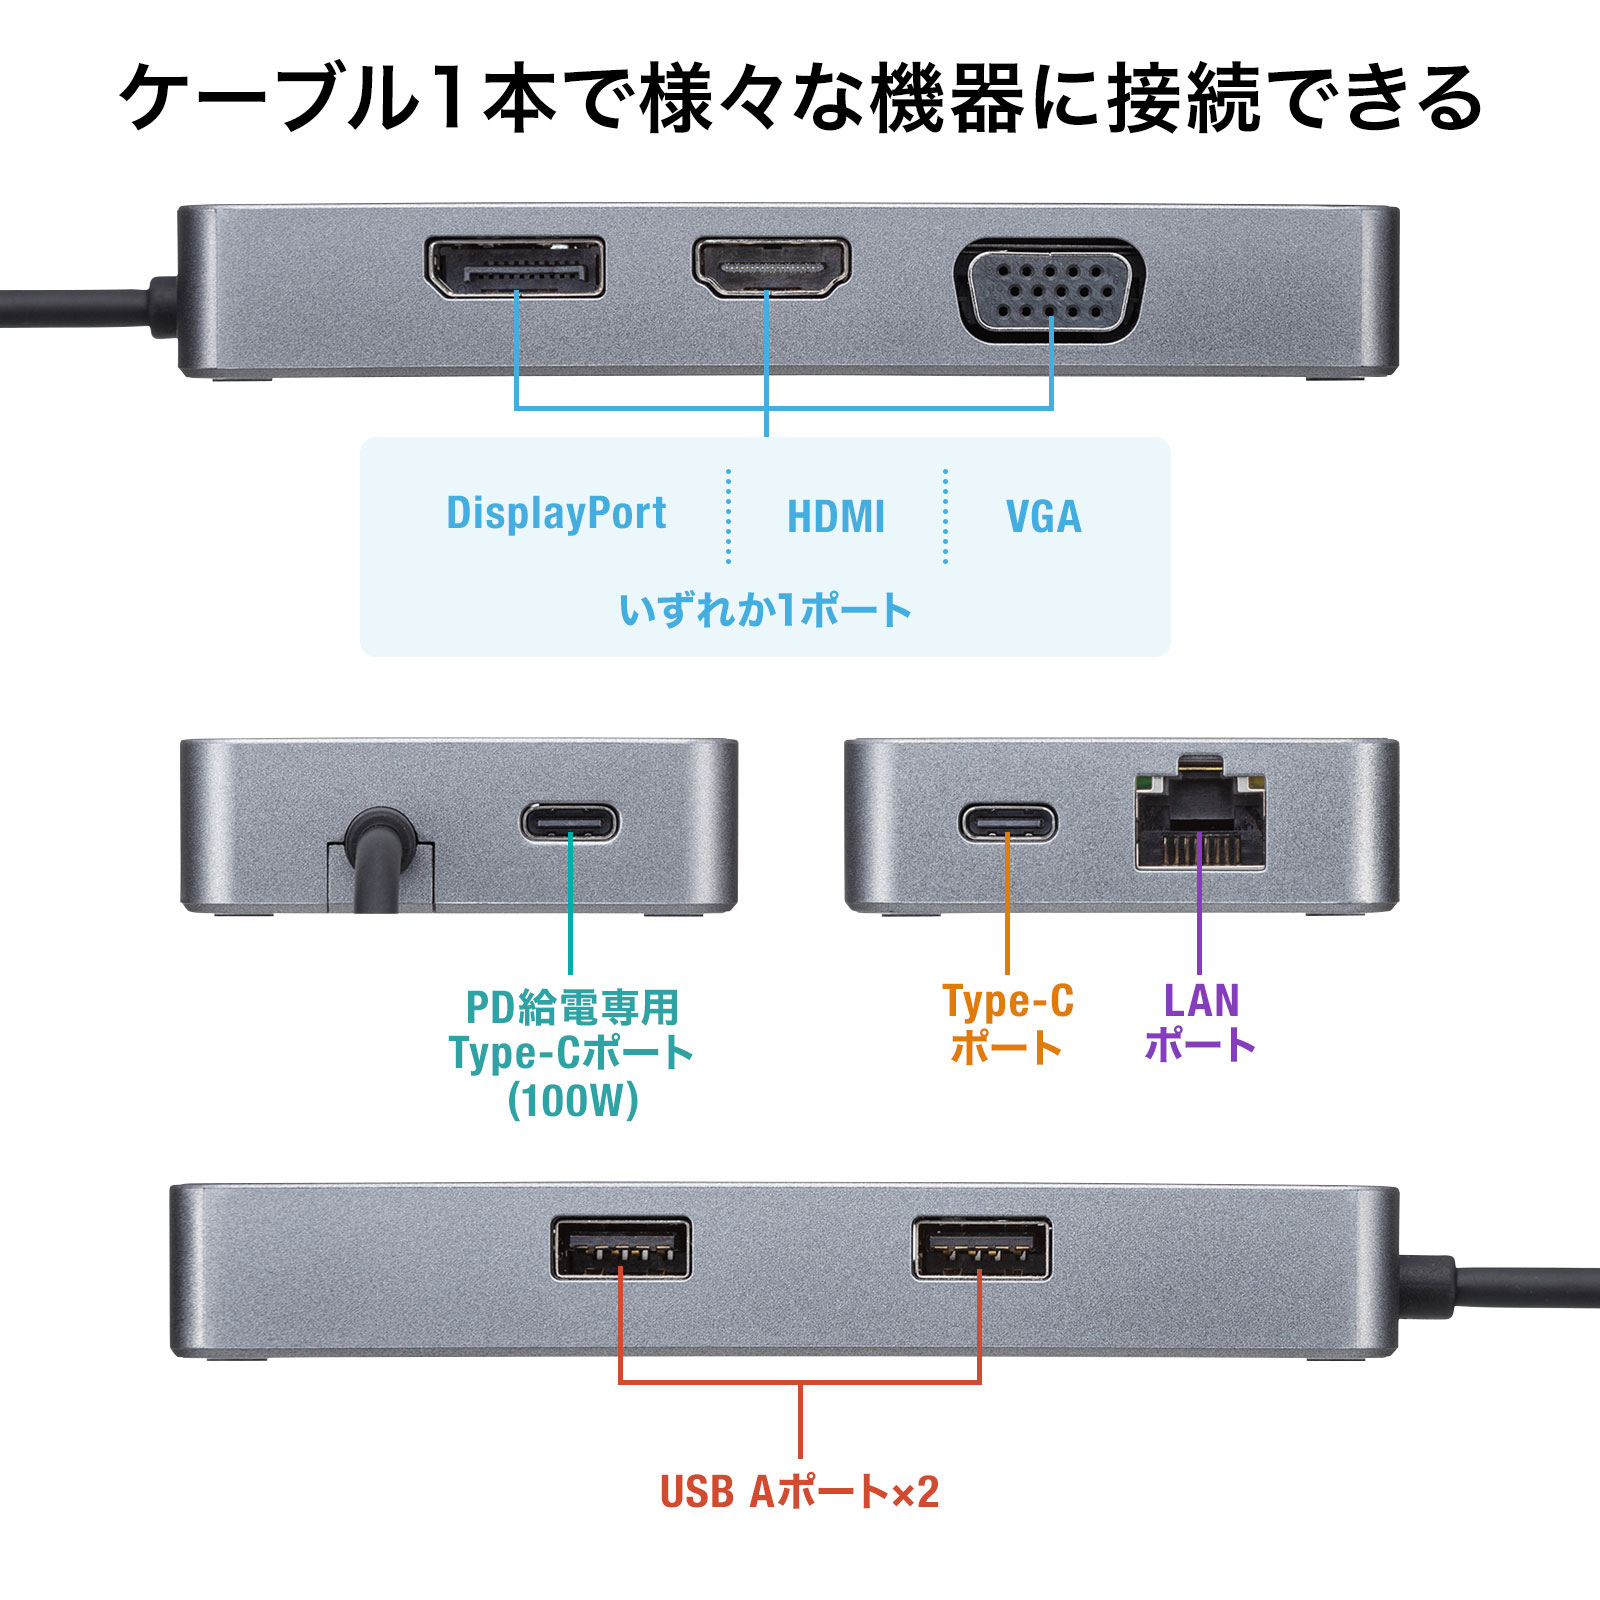 ☆安心の定価販売☆】 【サンワサプライ】USB Type-C専用ドッキングステーション(HDMI/DisplayPort対応・PD対応) USBハブ  USBハブ MAILGERIMOB